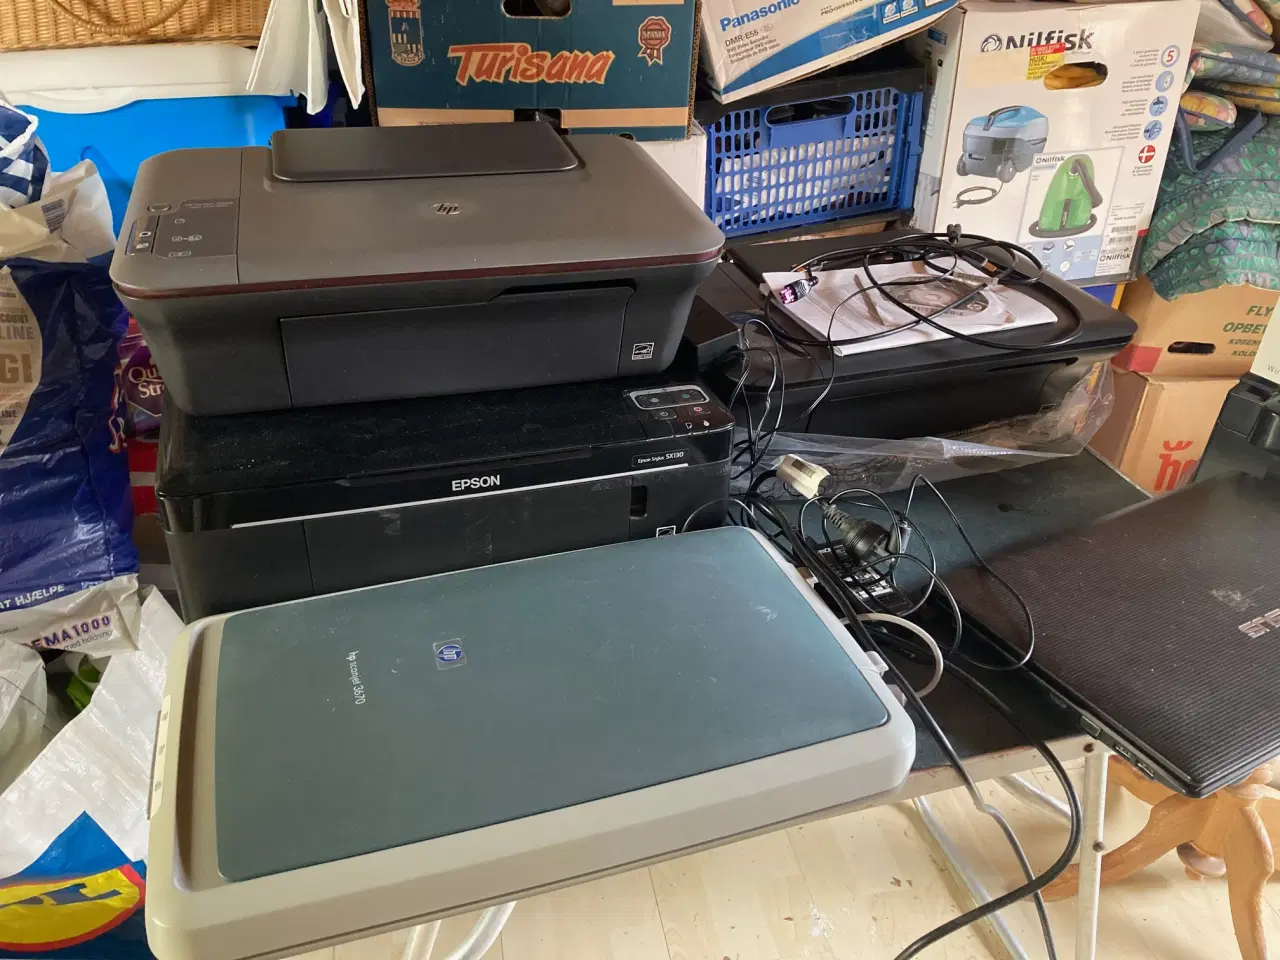 Billede 2 - 4 printere, 1 scanner og 1 bærbar PC samt router